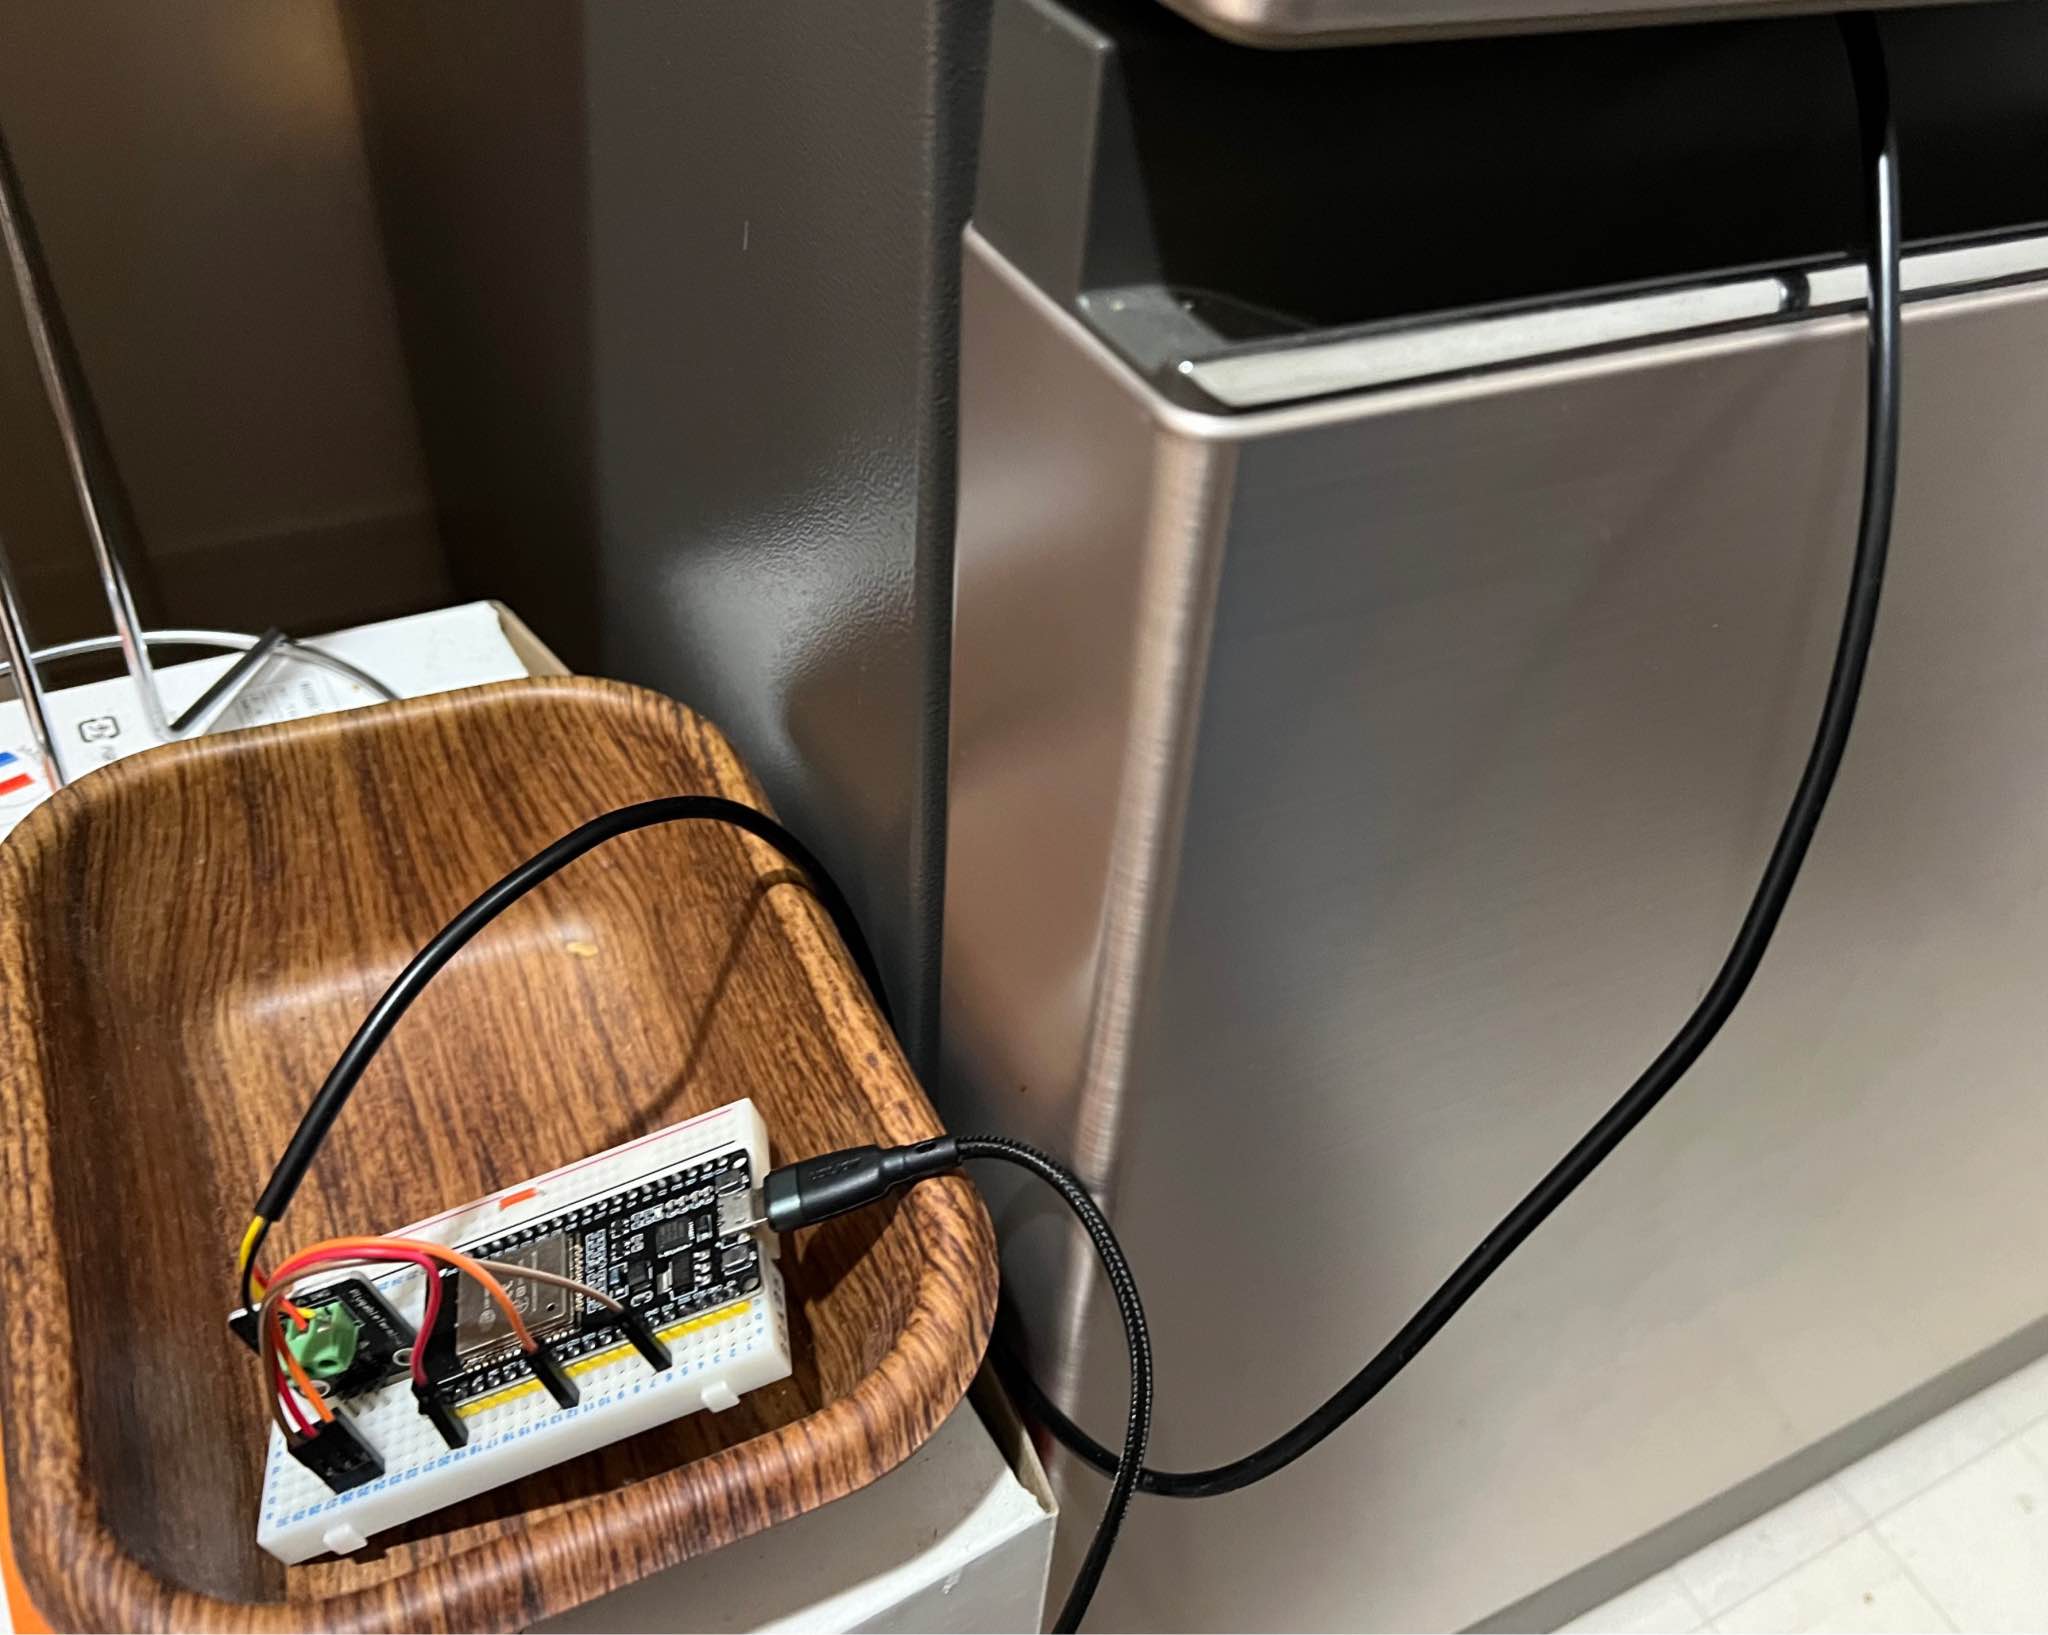 自宅冷凍庫の温度を計測するために自作した温度センサとマイクロコンピュータ